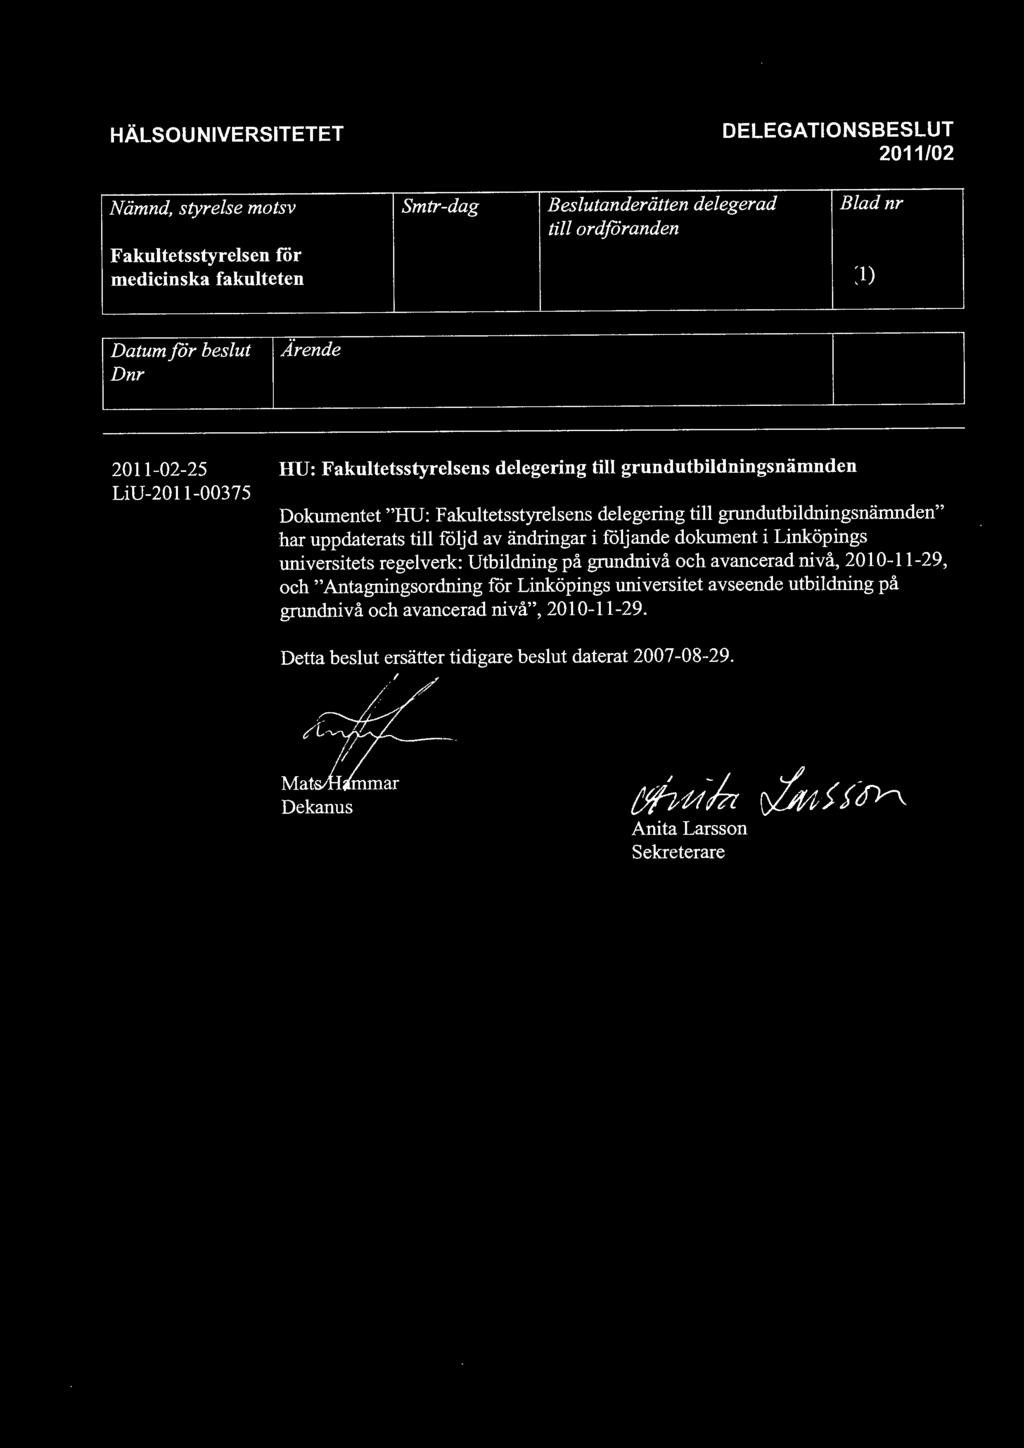 uppdaterats till följd av ändringar i följande dokument i Linköpings universitets regelverk: Utbildning på grundnivå och avancerad nivå, 2010-11-29, och" Antagningsordning för Linköpings